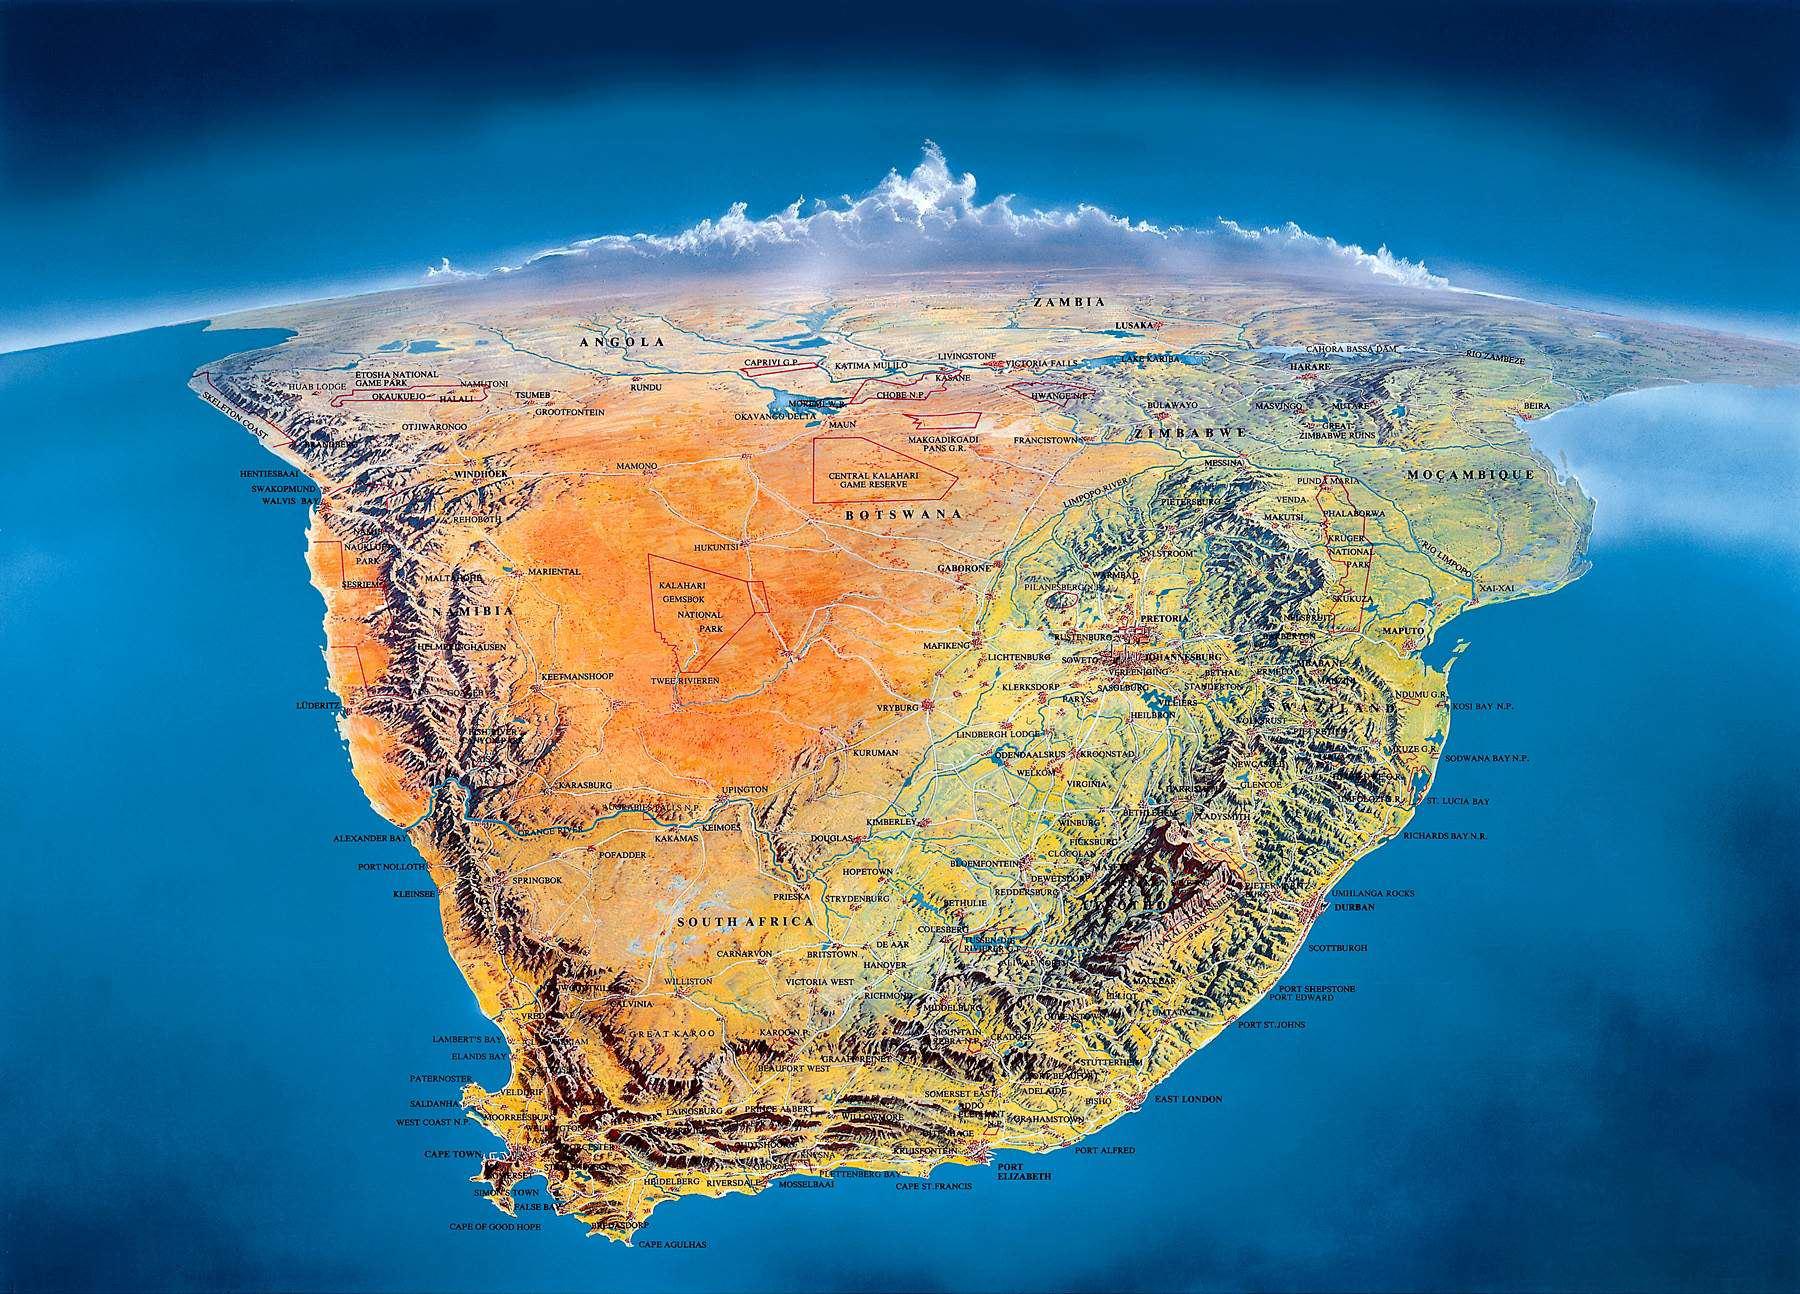 http://mondomix.com/blogs/media/image/carte-afrique-du-sud-big.jpg